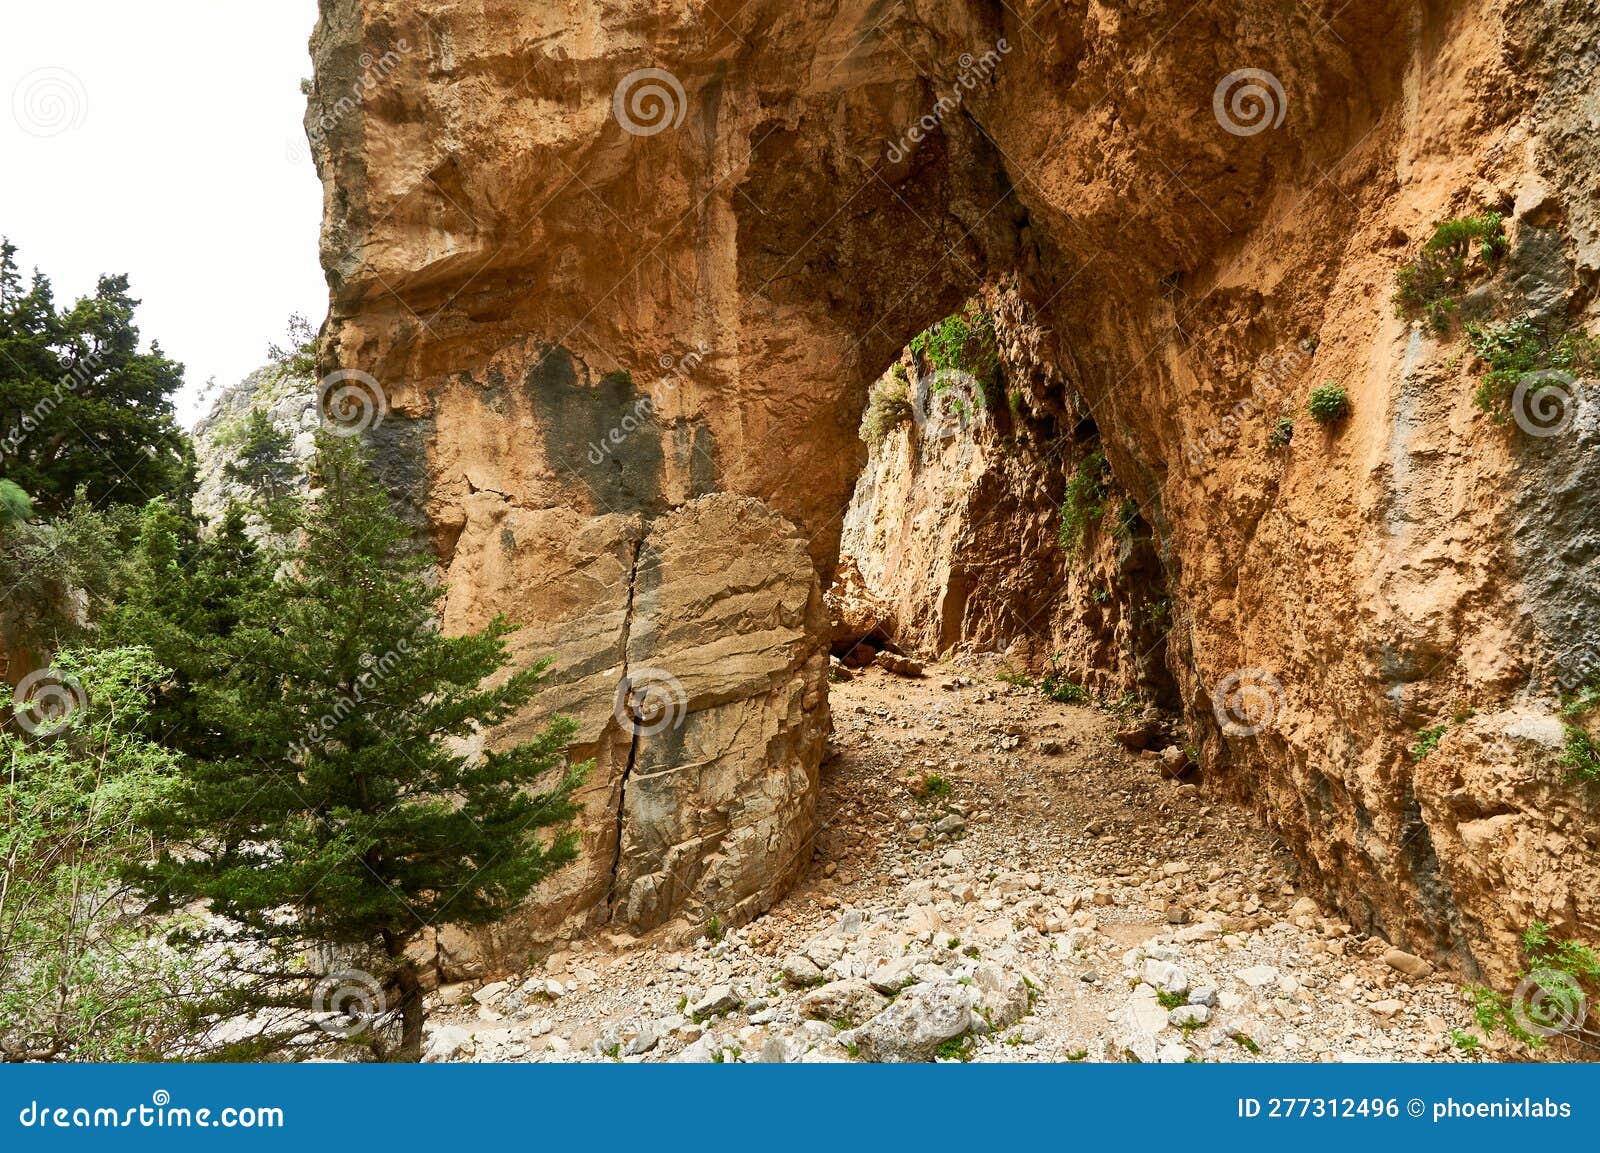 imbros canyon in crete, greece